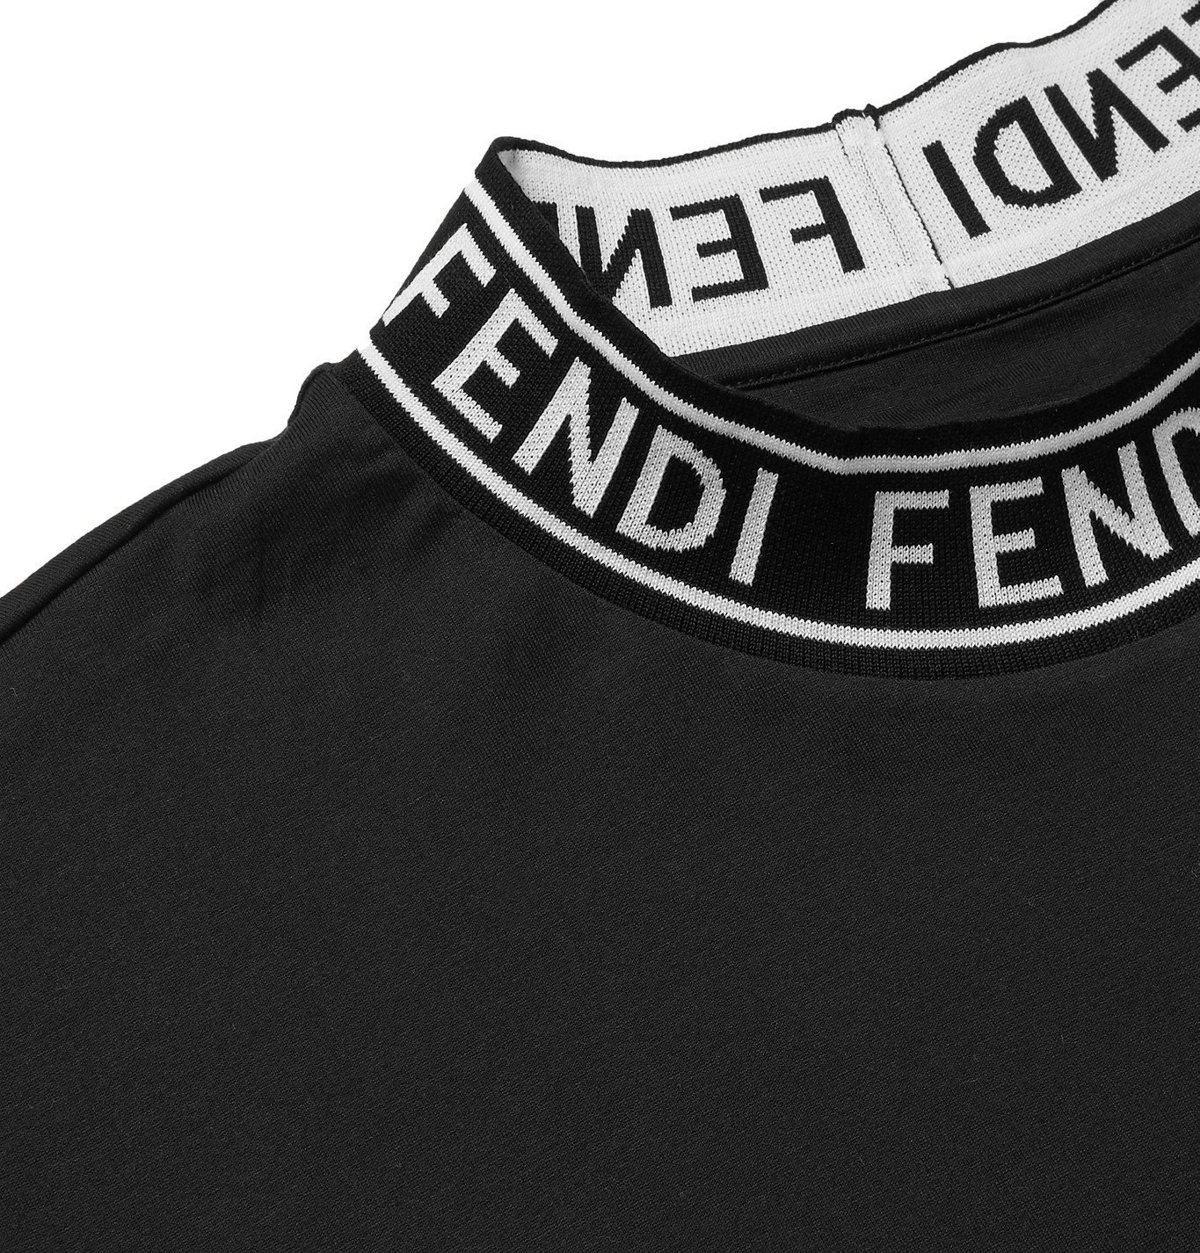 Fendi - Logo-Jacquard Cotton-Jersey Mock-Neck T-Shirt - Black Fendi